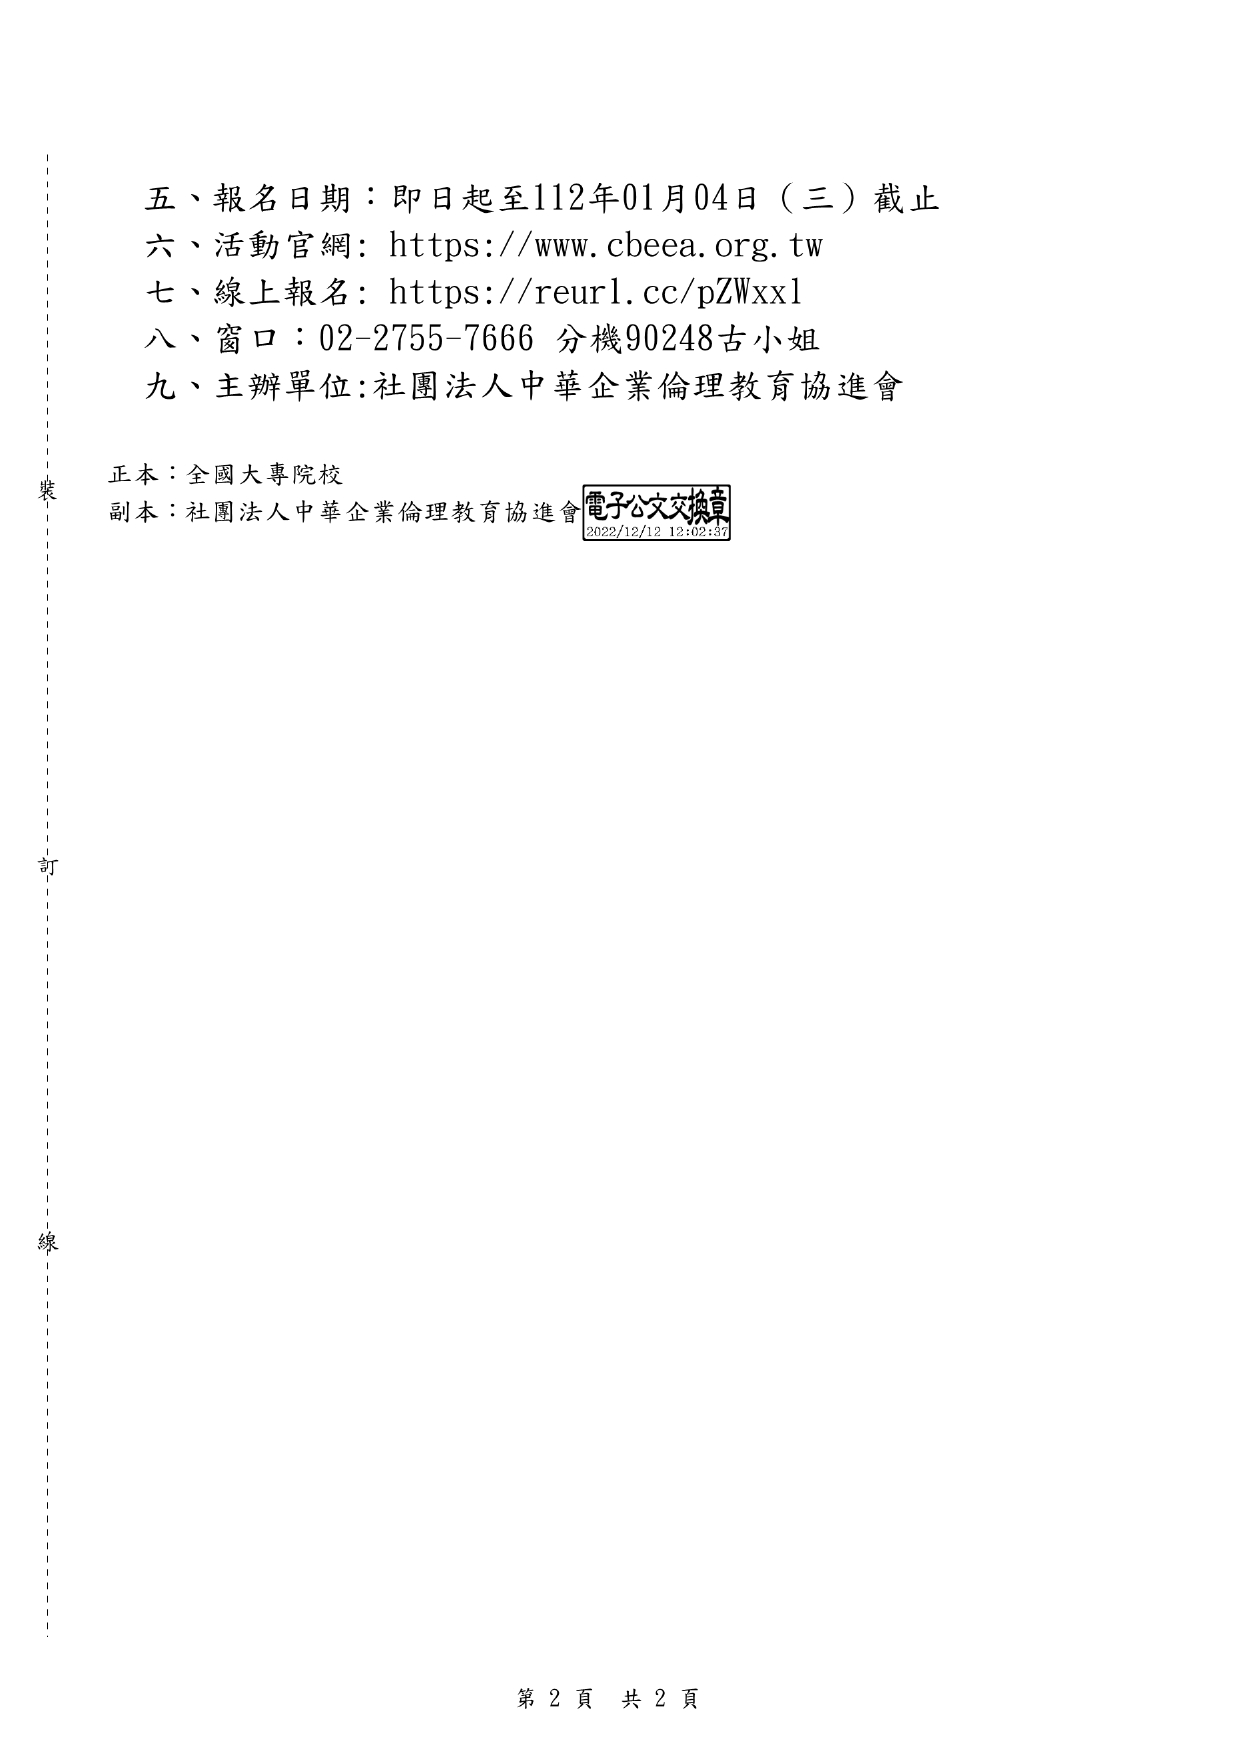 1111220社團法人中華企業倫理教育協進會課程宣傳公文 page 0002